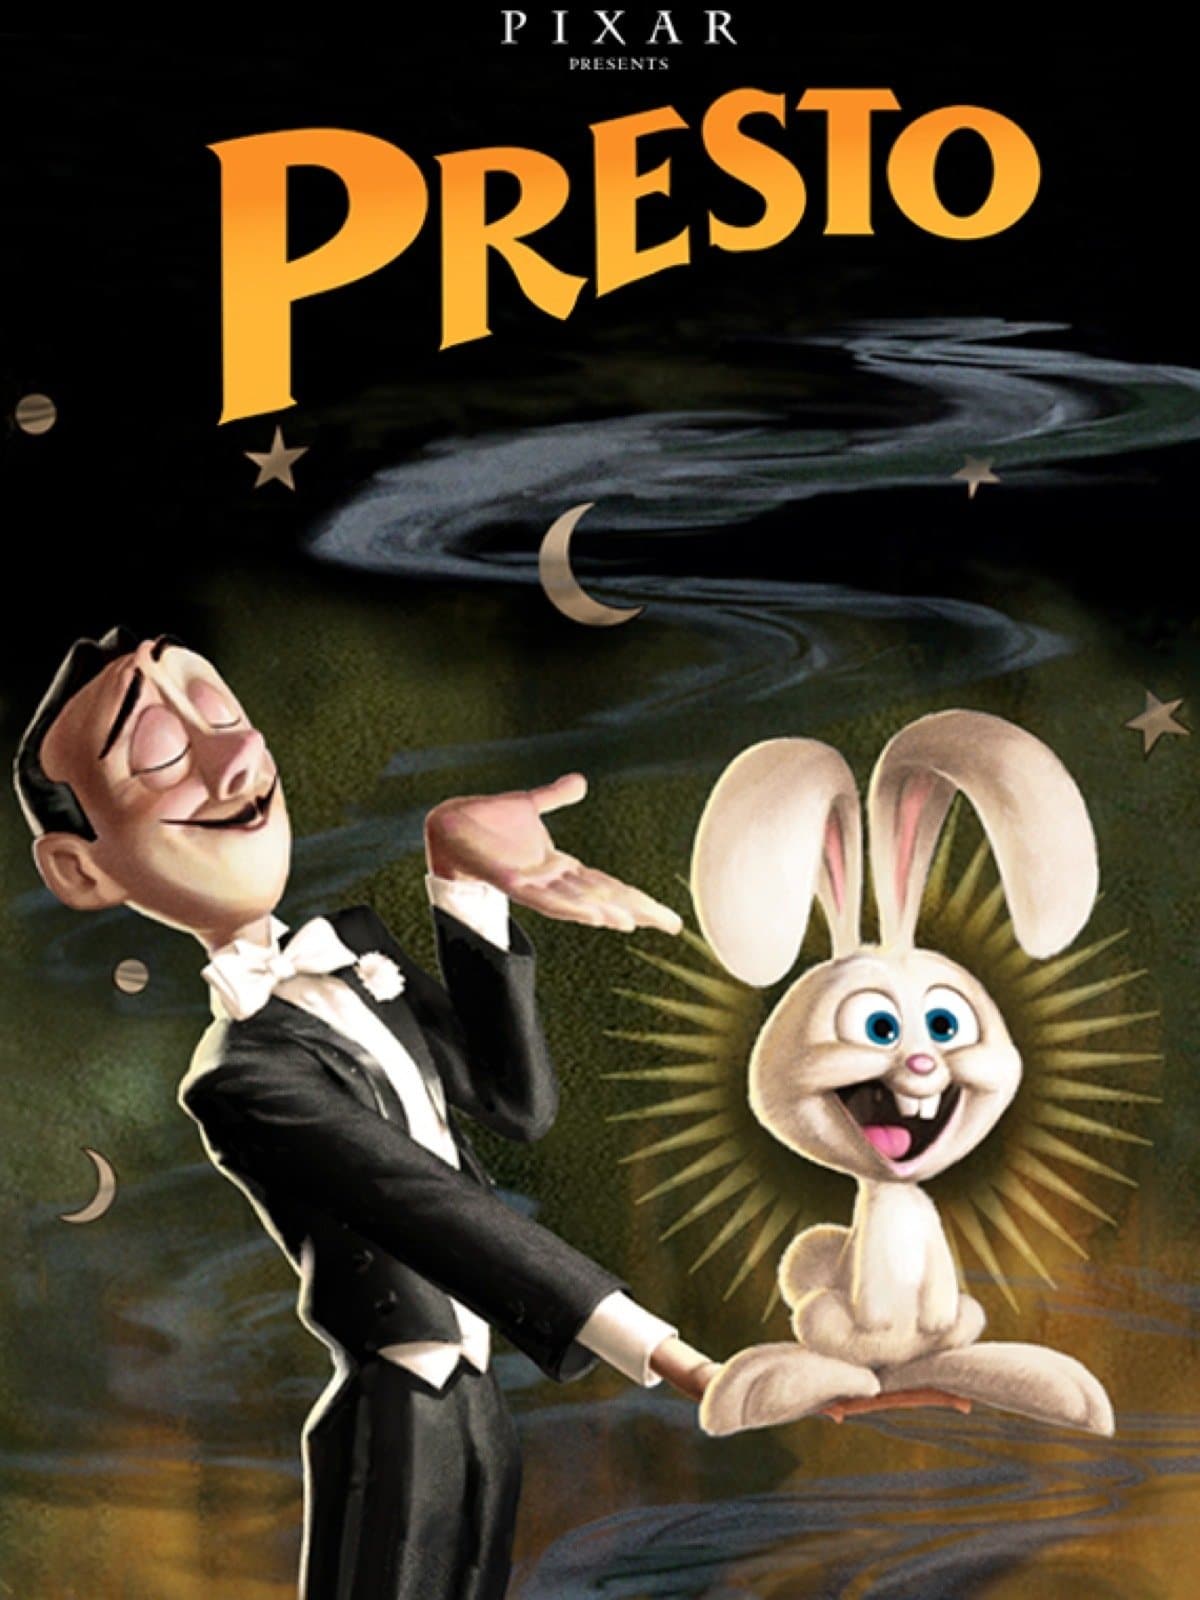 L'affiche de Presto montre un lapin blanc qui est tenu par un magicien.